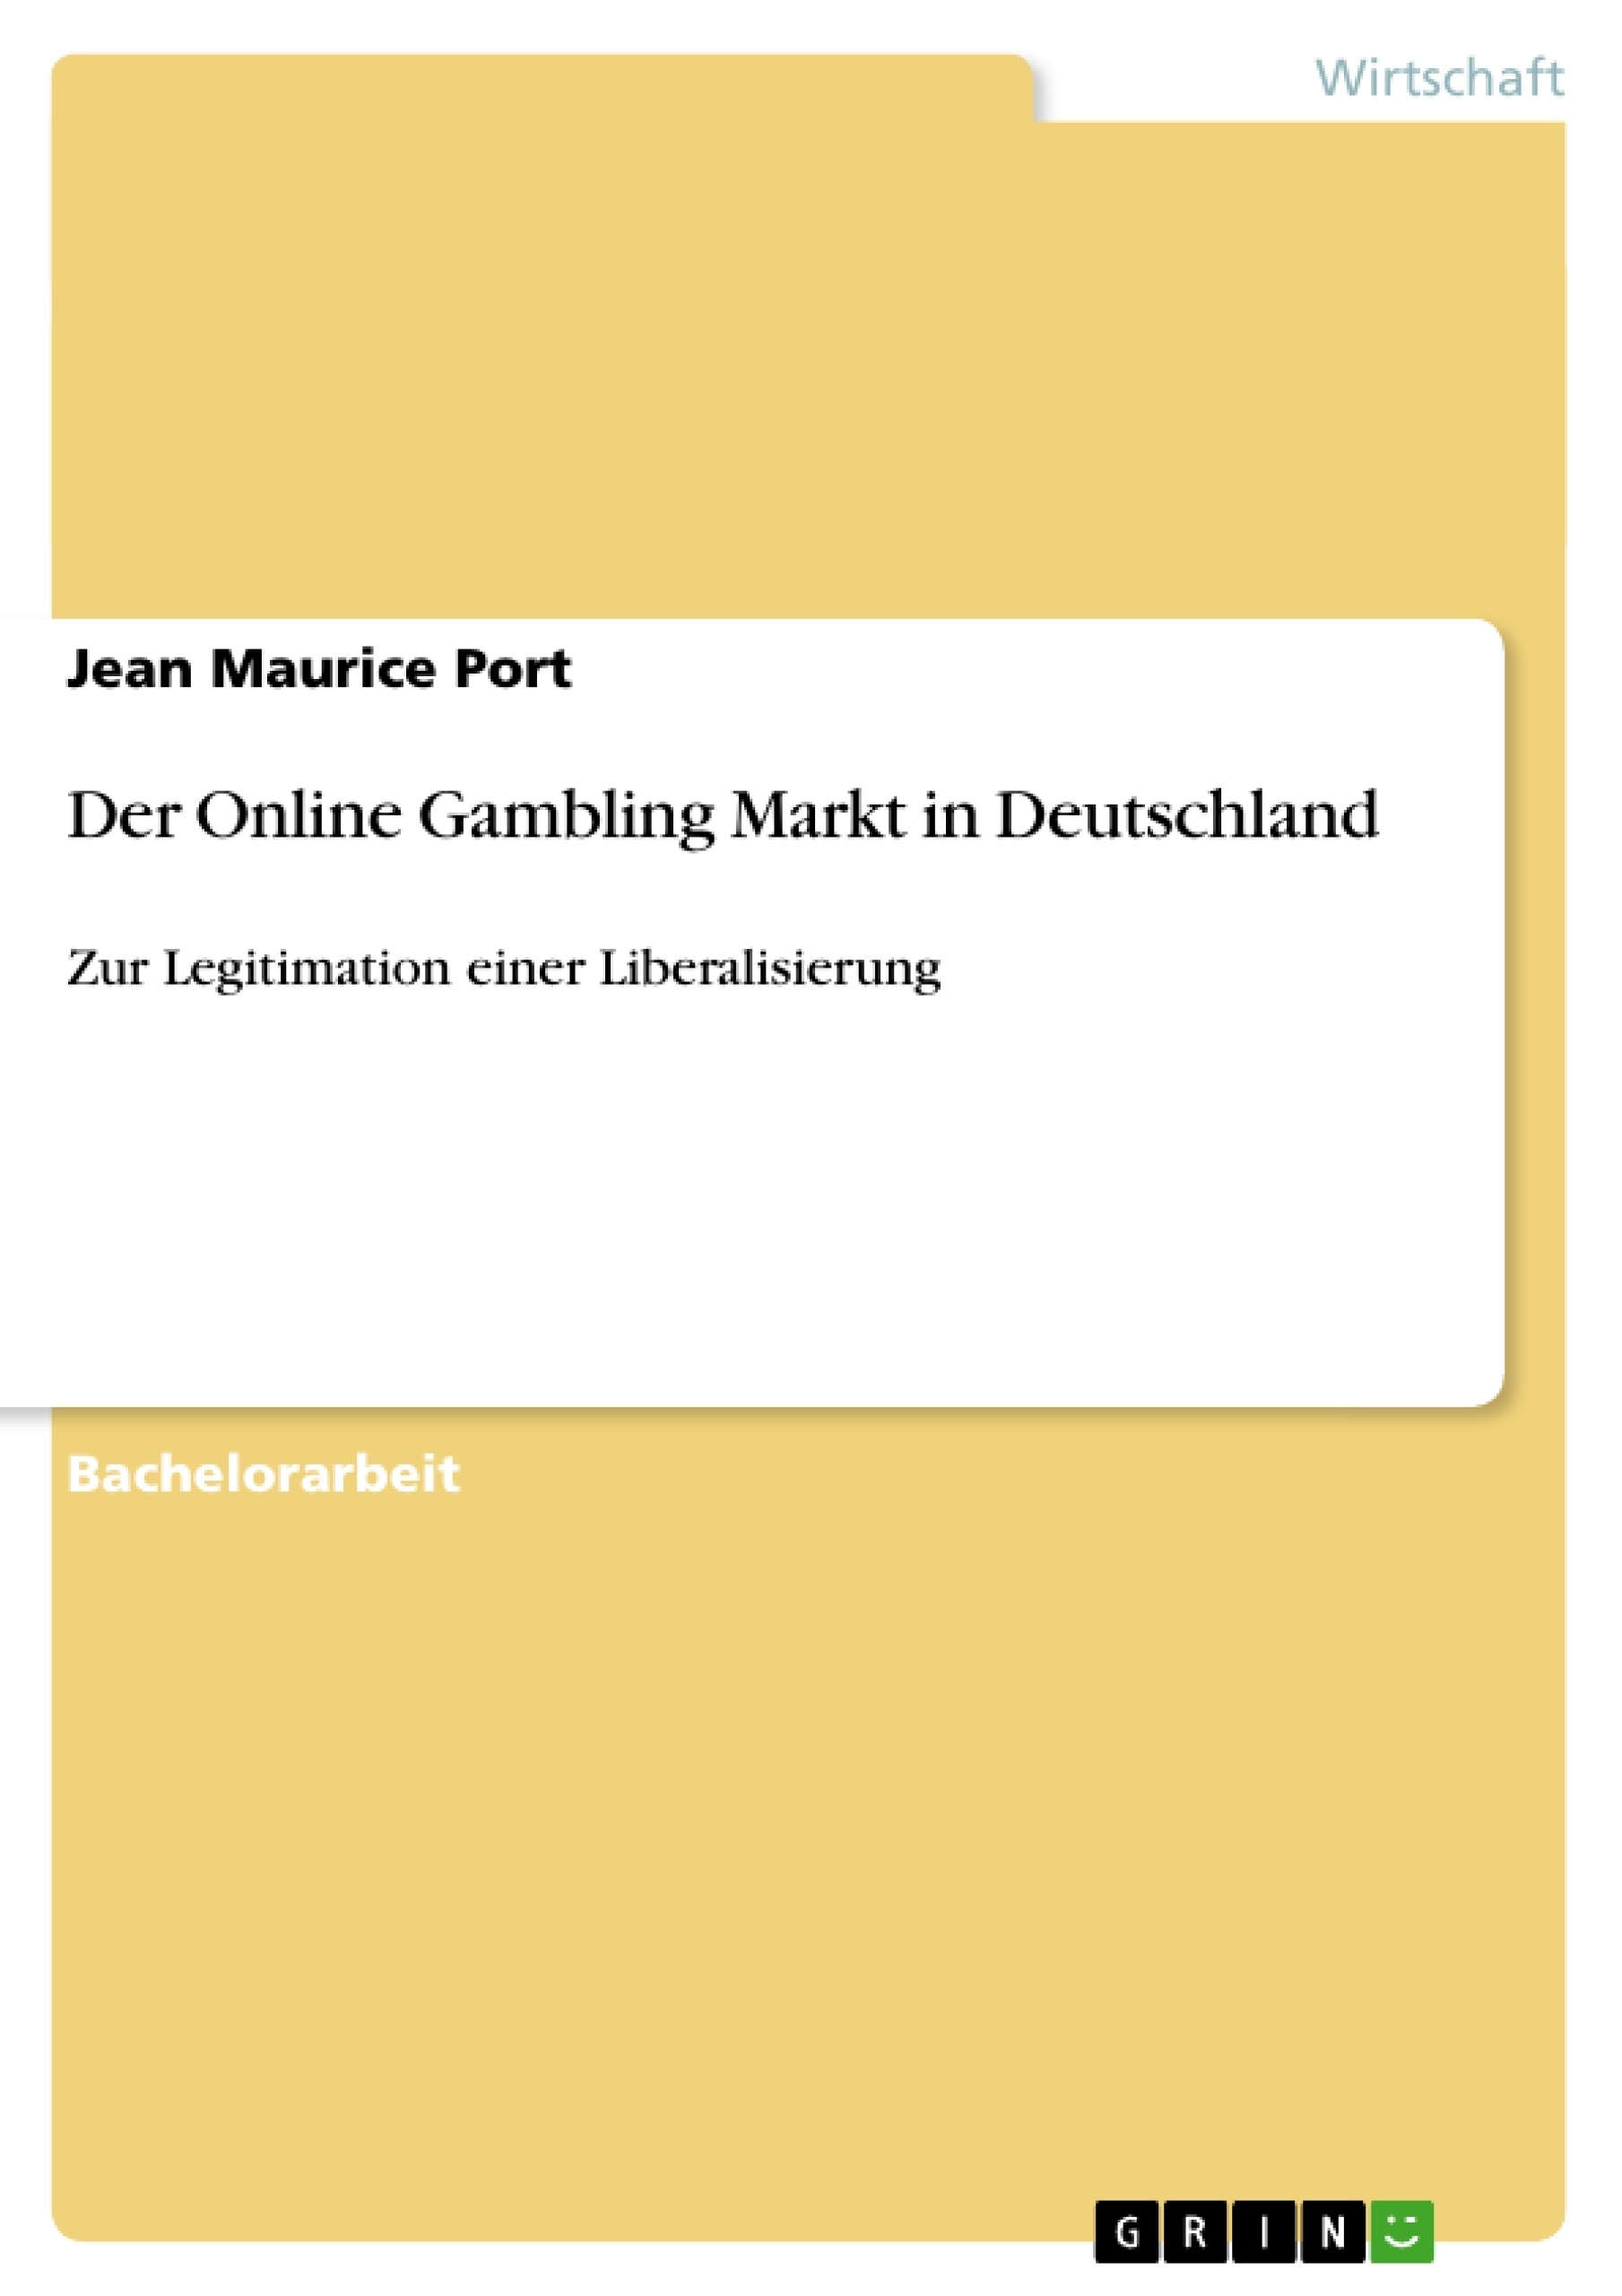 Título: Der Online Gambling Markt in Deutschland